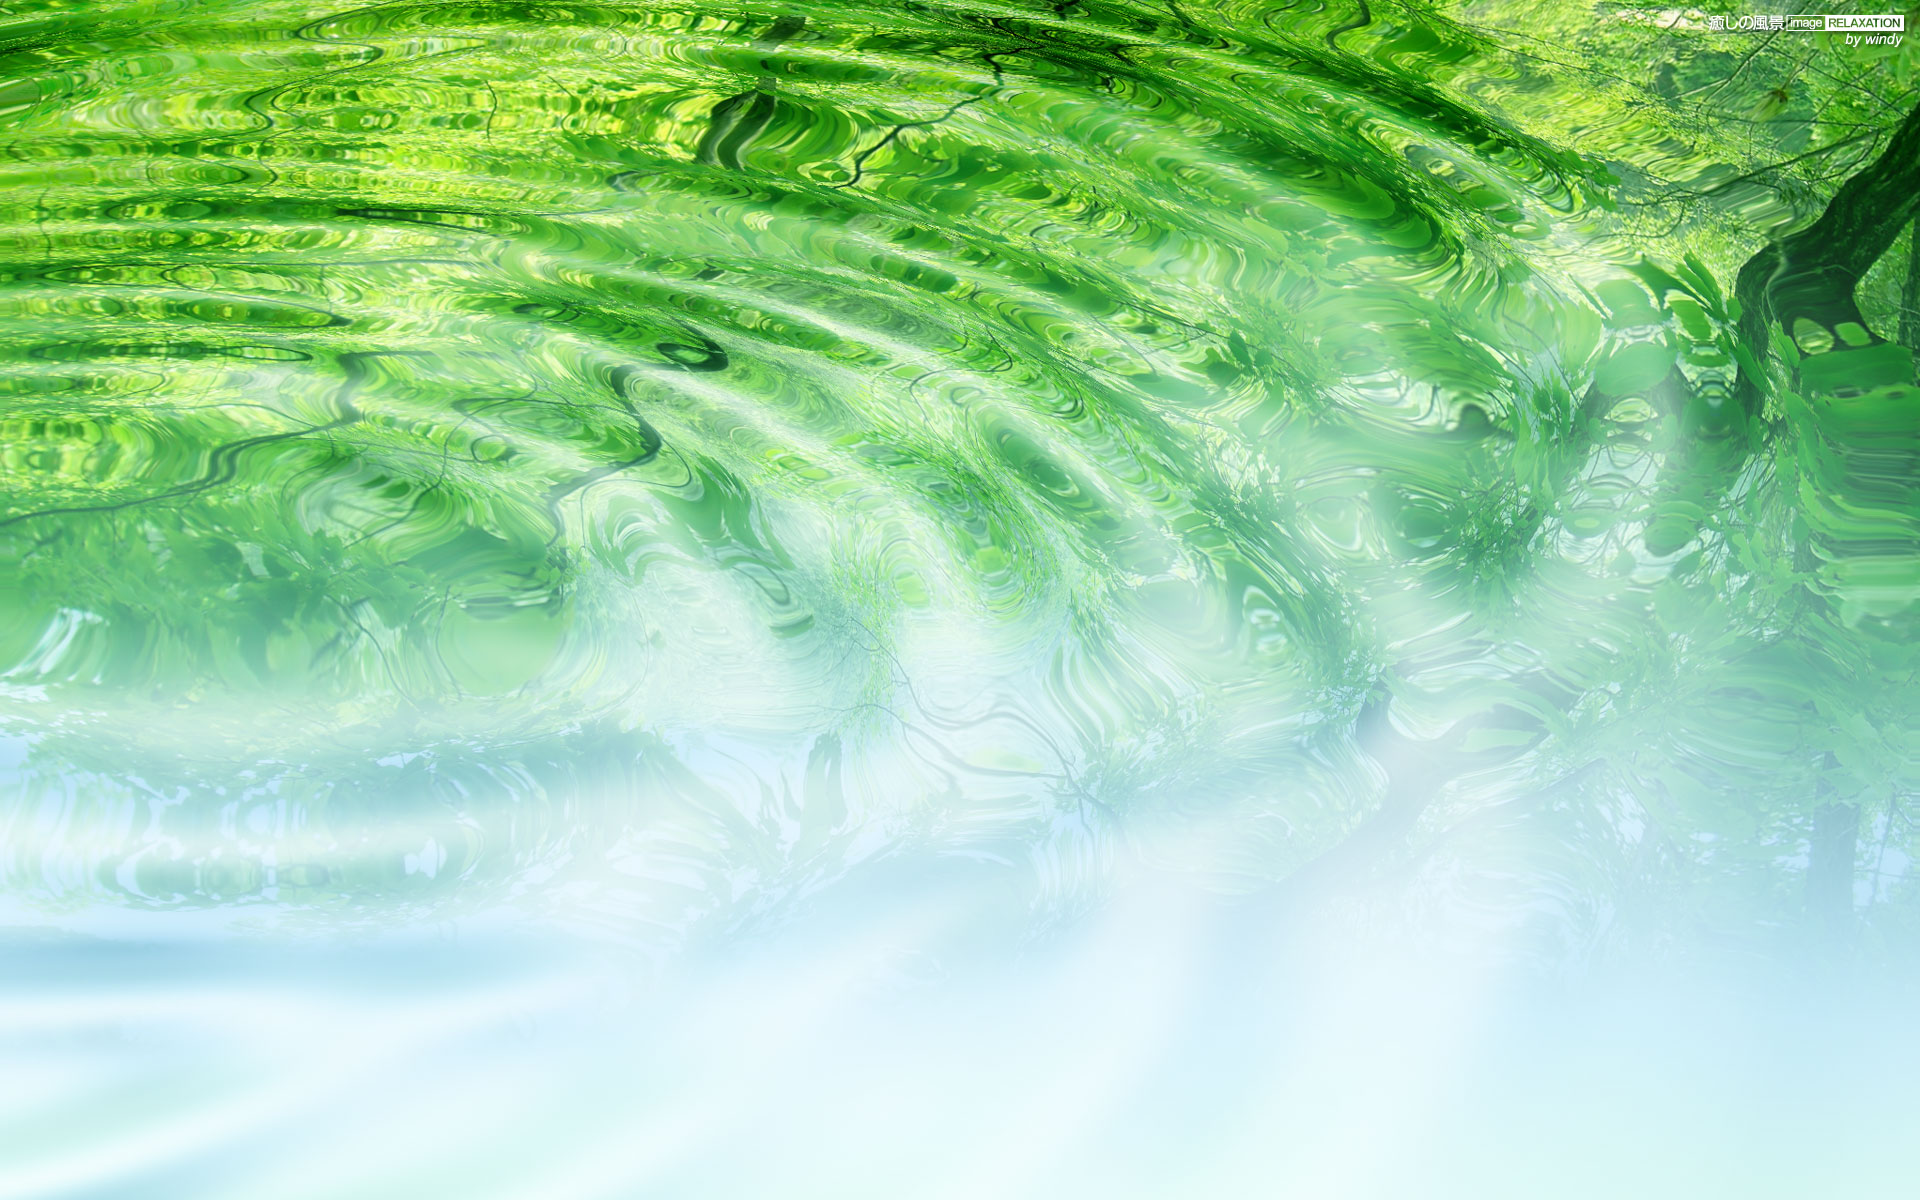 水と緑の潤い 癒しの風景 Image Relaxation 癒し壁紙